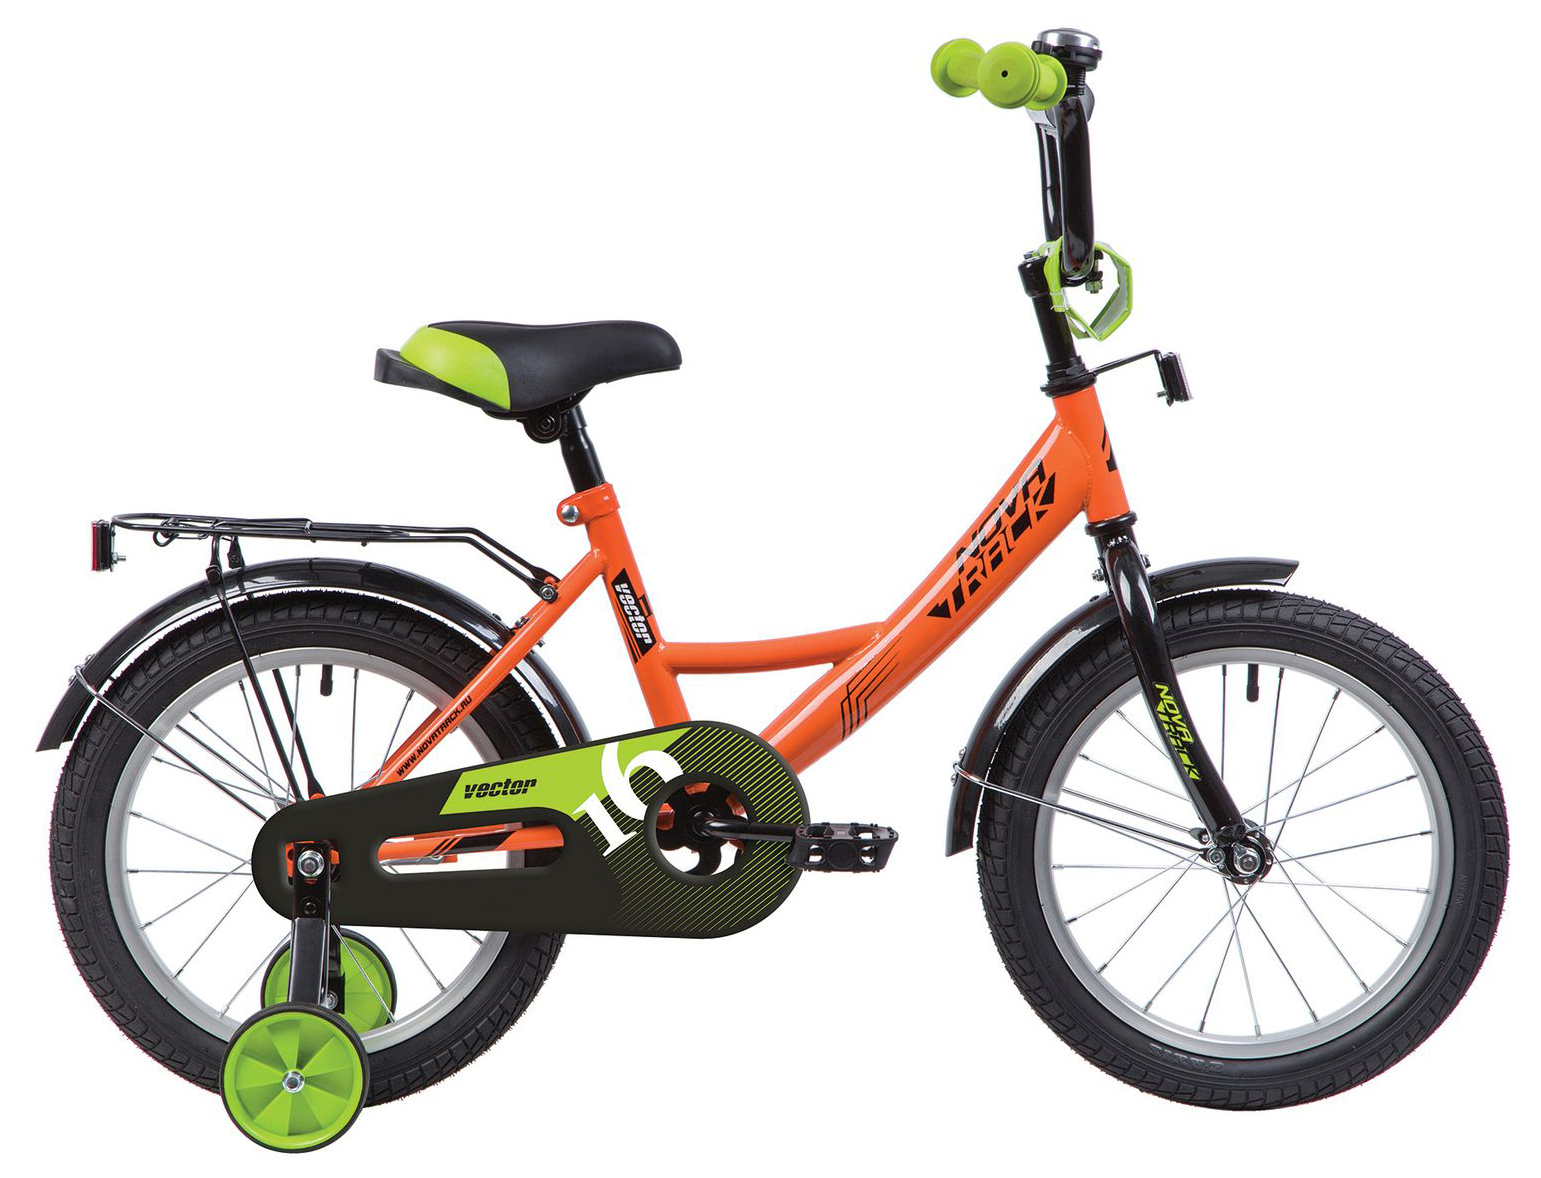  Отзывы о Детском велосипеде Novatrack Vector 14 2020